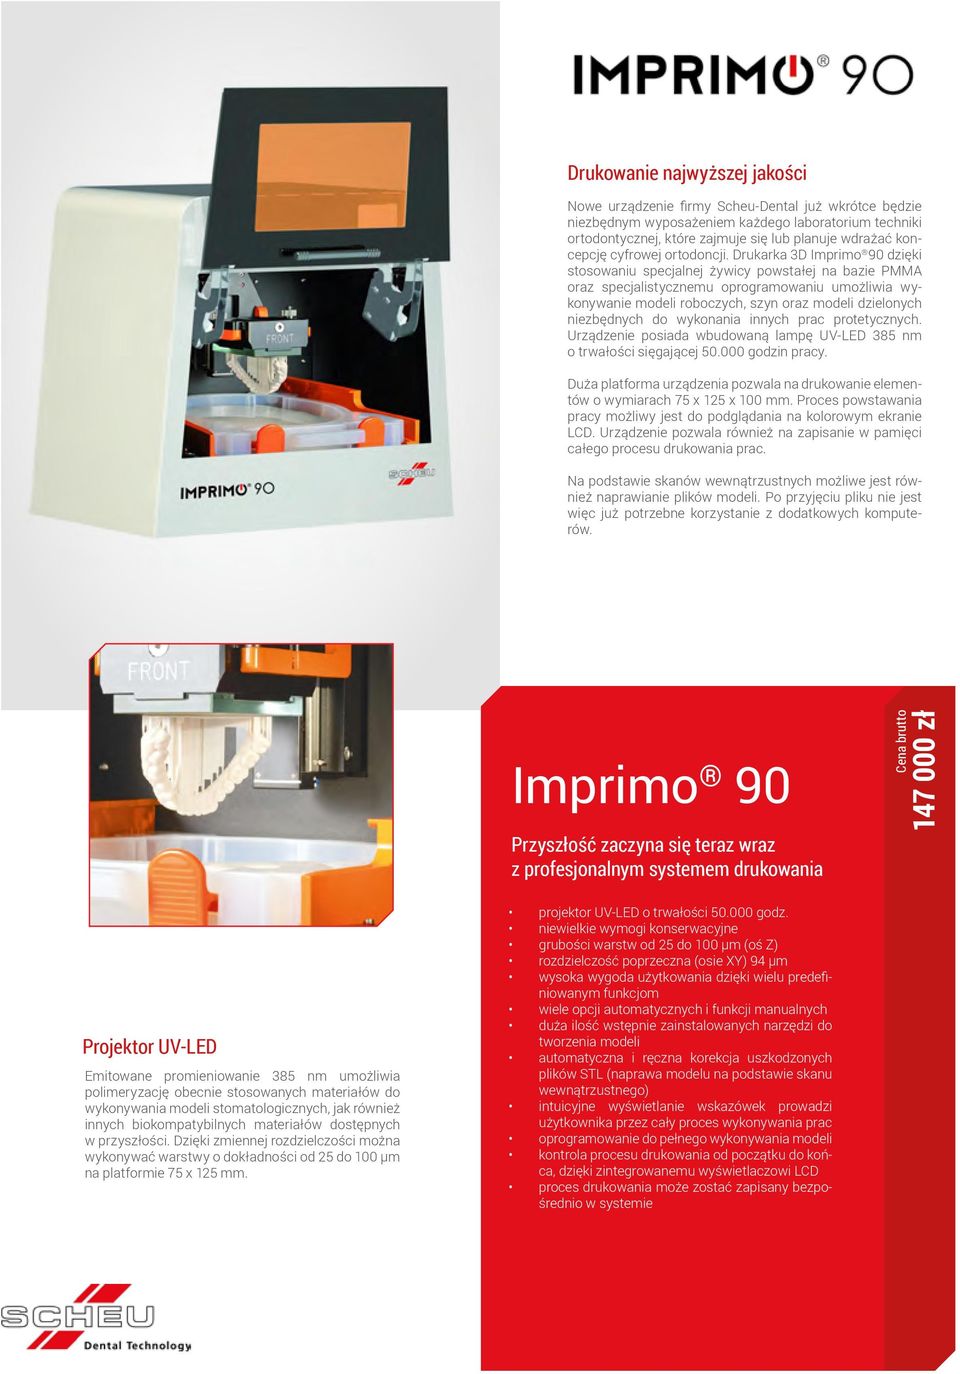 Drukarka 3D Imprimo 90 dzięki stosowaniu specjalnej żywicy powstałej na bazie PMMA oraz specjalistycznemu oprogramowaniu umożliwia wykonywanie modeli roboczych, szyn oraz modeli dzielonych